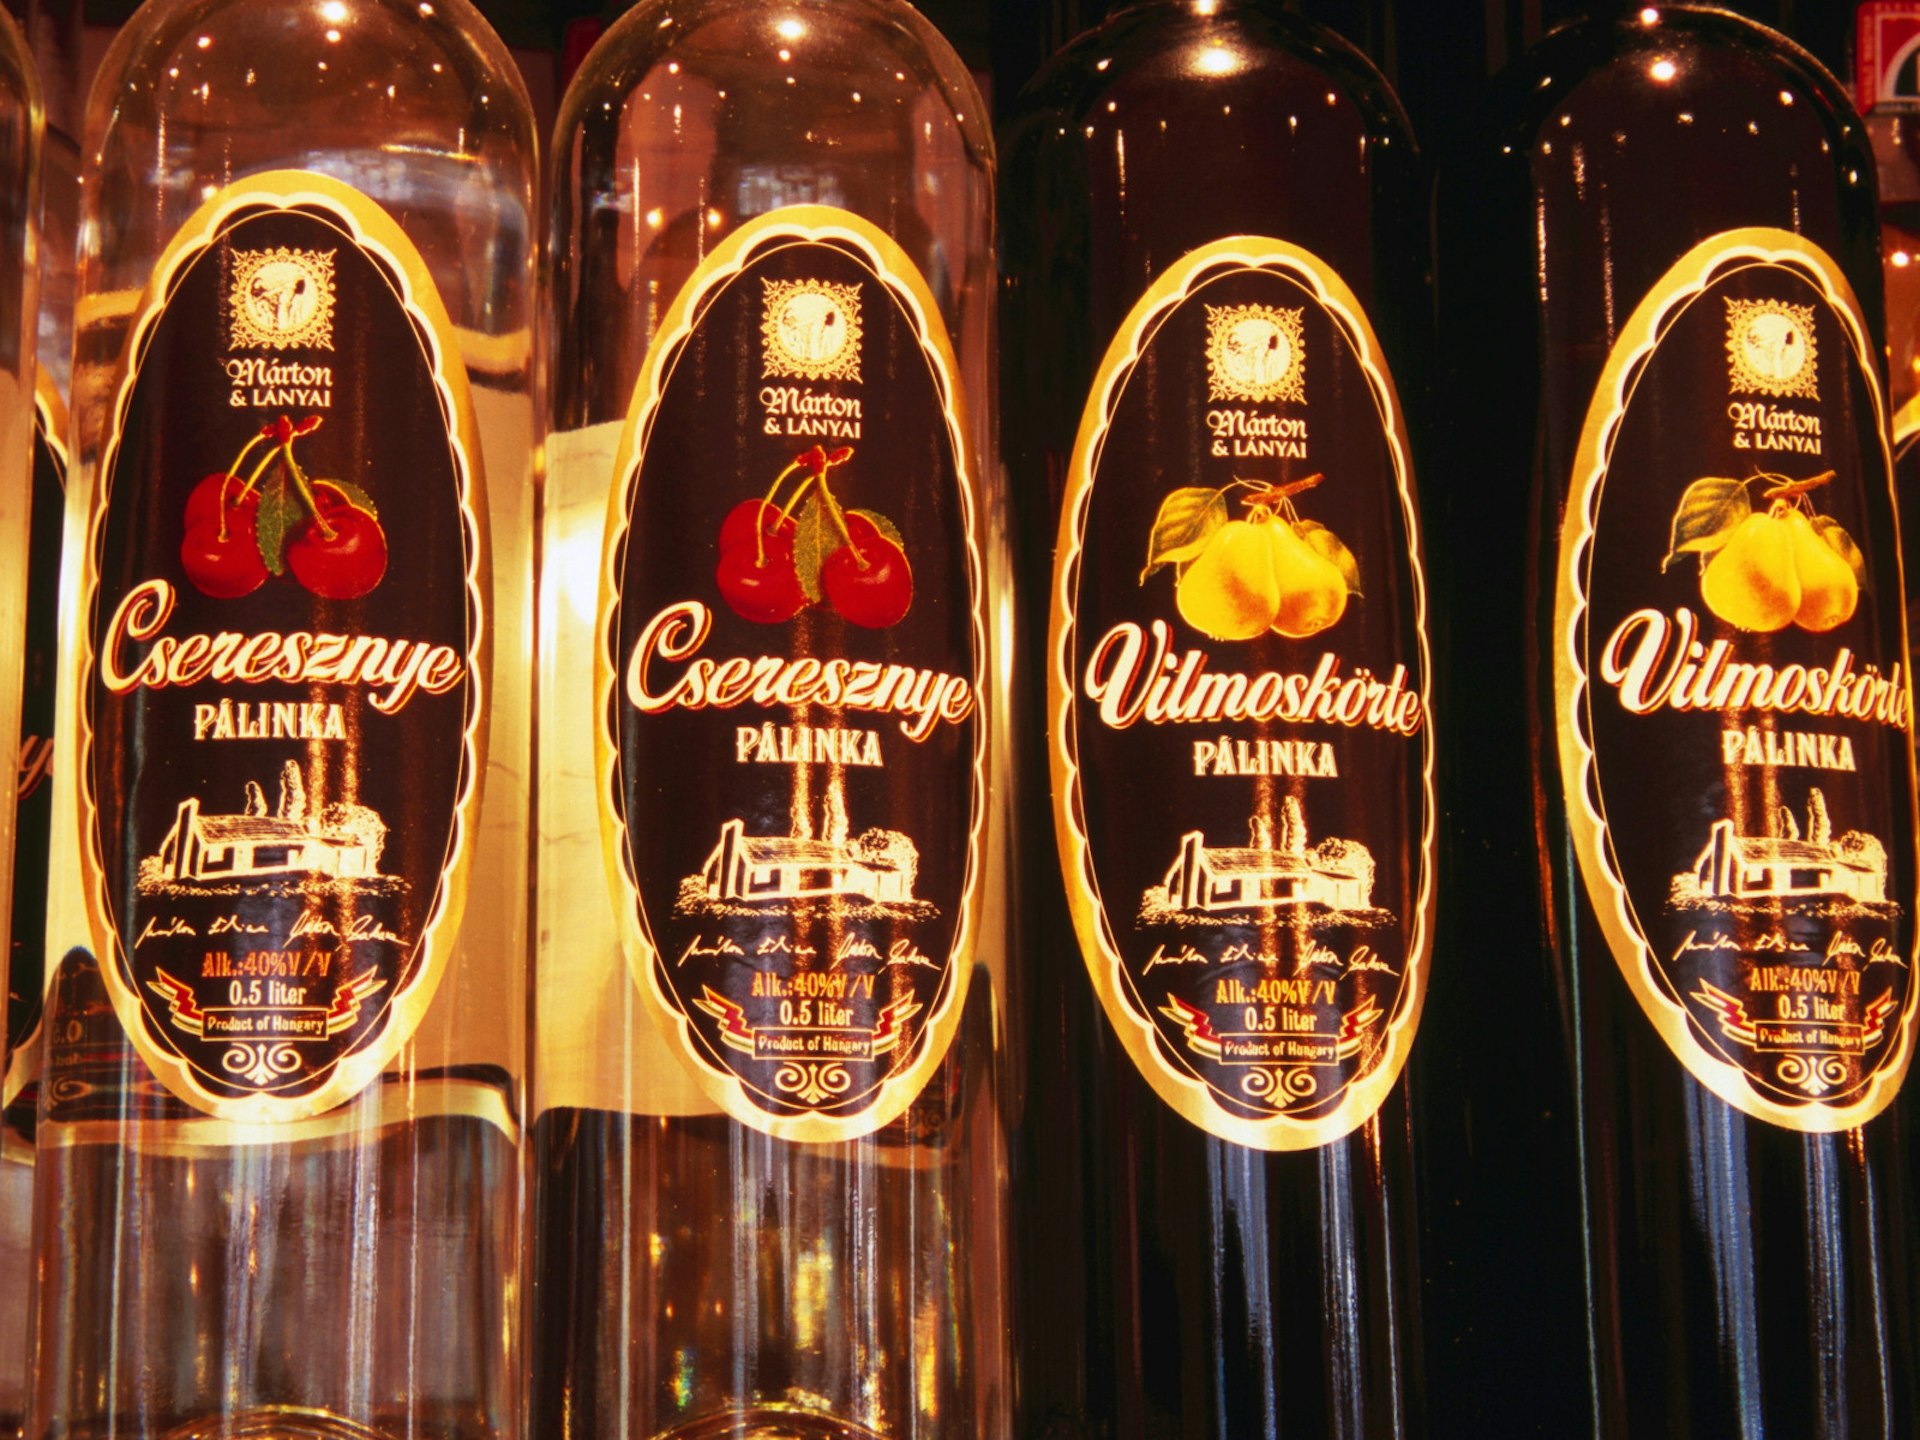 Pálinka (fruit brandy) bottles lined up at Magyar Pálinka Háza store in Budapest © Richard Nebesky / Lonely Planet